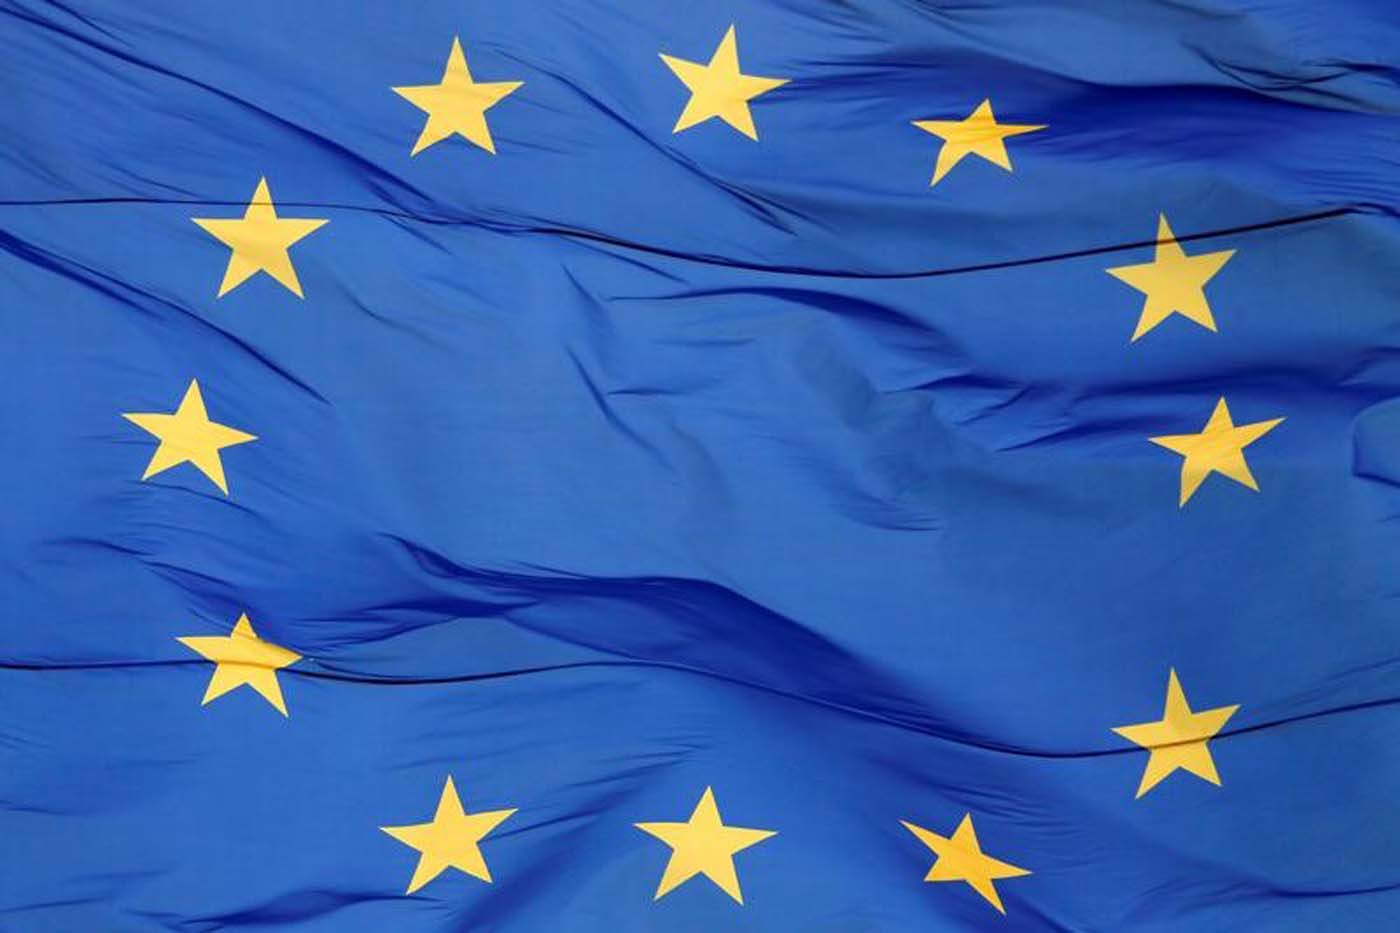 Foto de archivo: Una bandera de la Unión Europea (UE) es vista moviéndose por el viento en frente de la sede administrativa de una oficina regional en Kiev, Ucrania, 1 de mayo de 2017. REUTERS/Valentyn Ogirenko/File Photo